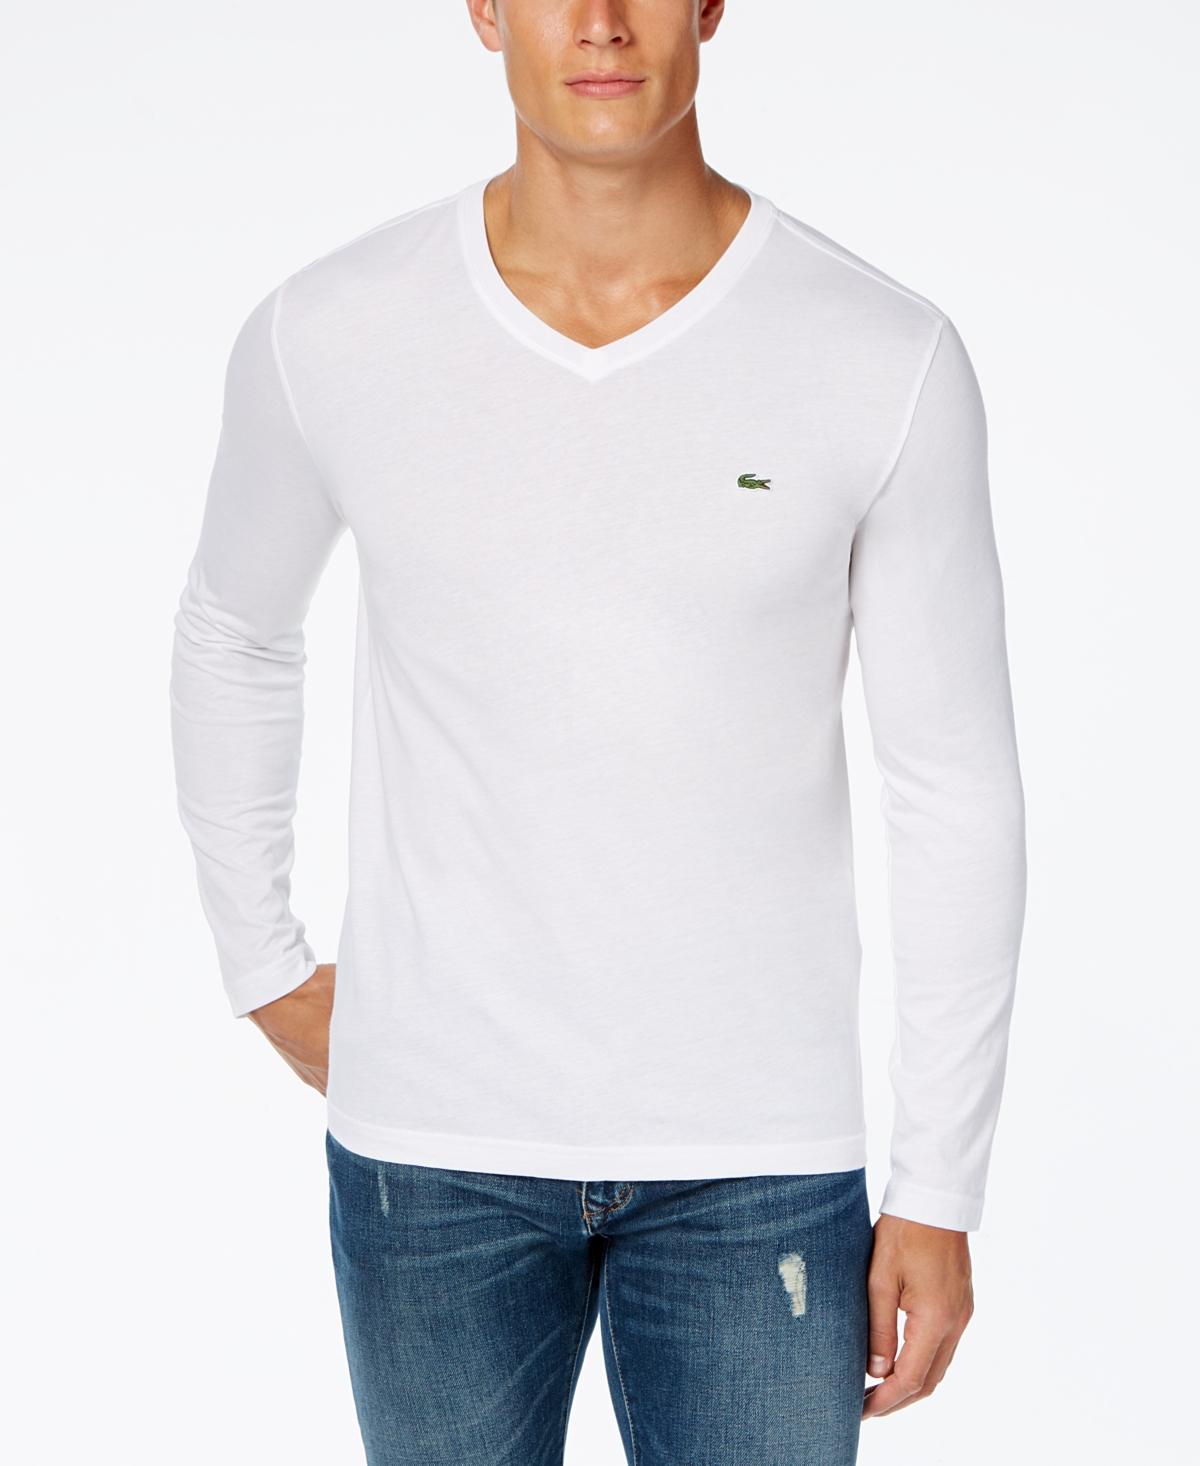 Lacoste White V-neck Long Sleeve T-shirt